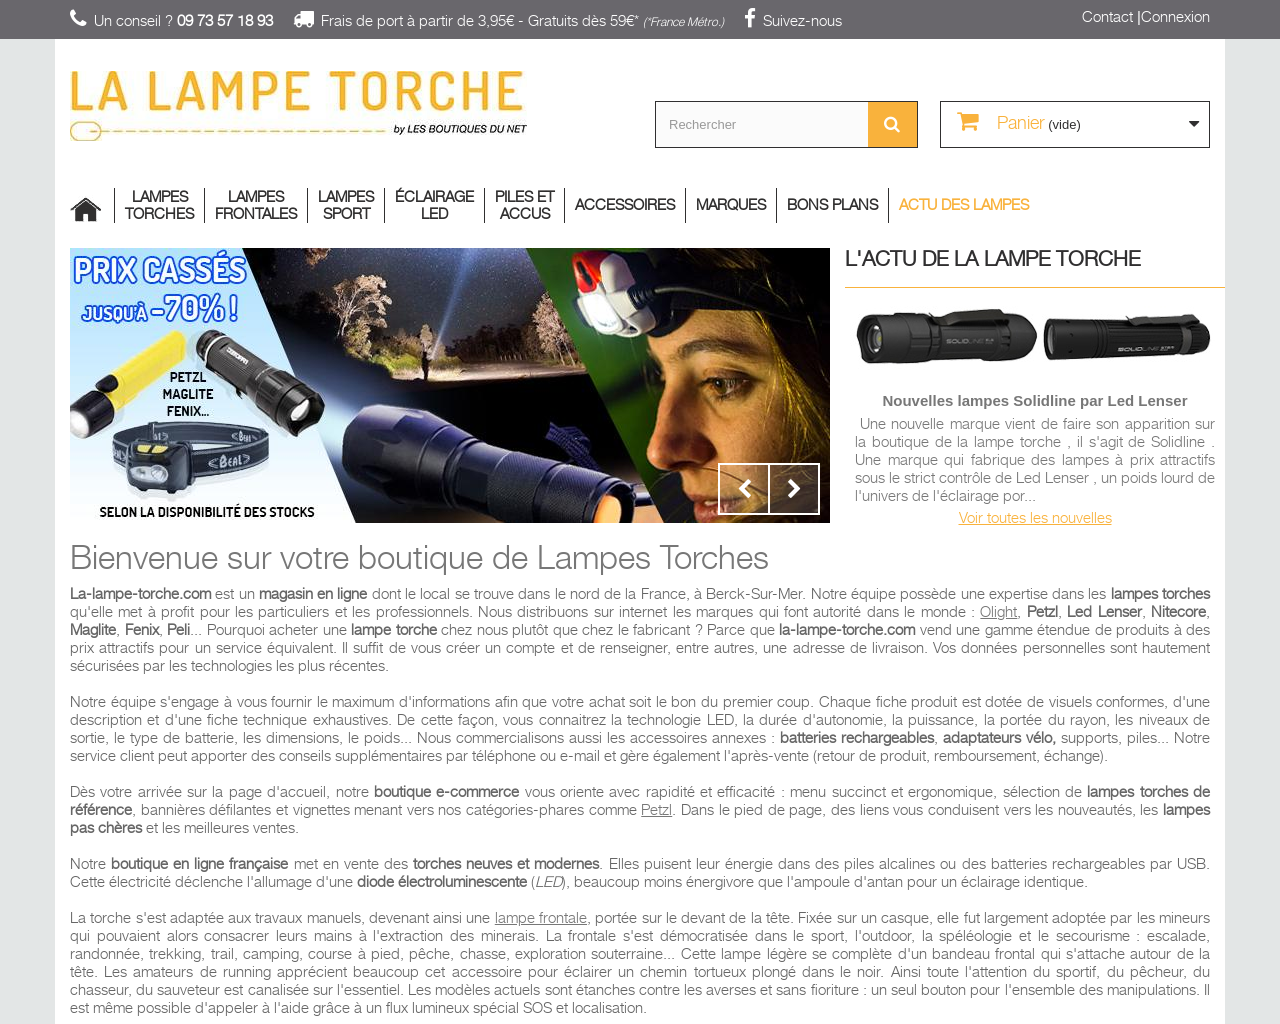 www.la-lampe-torche.com